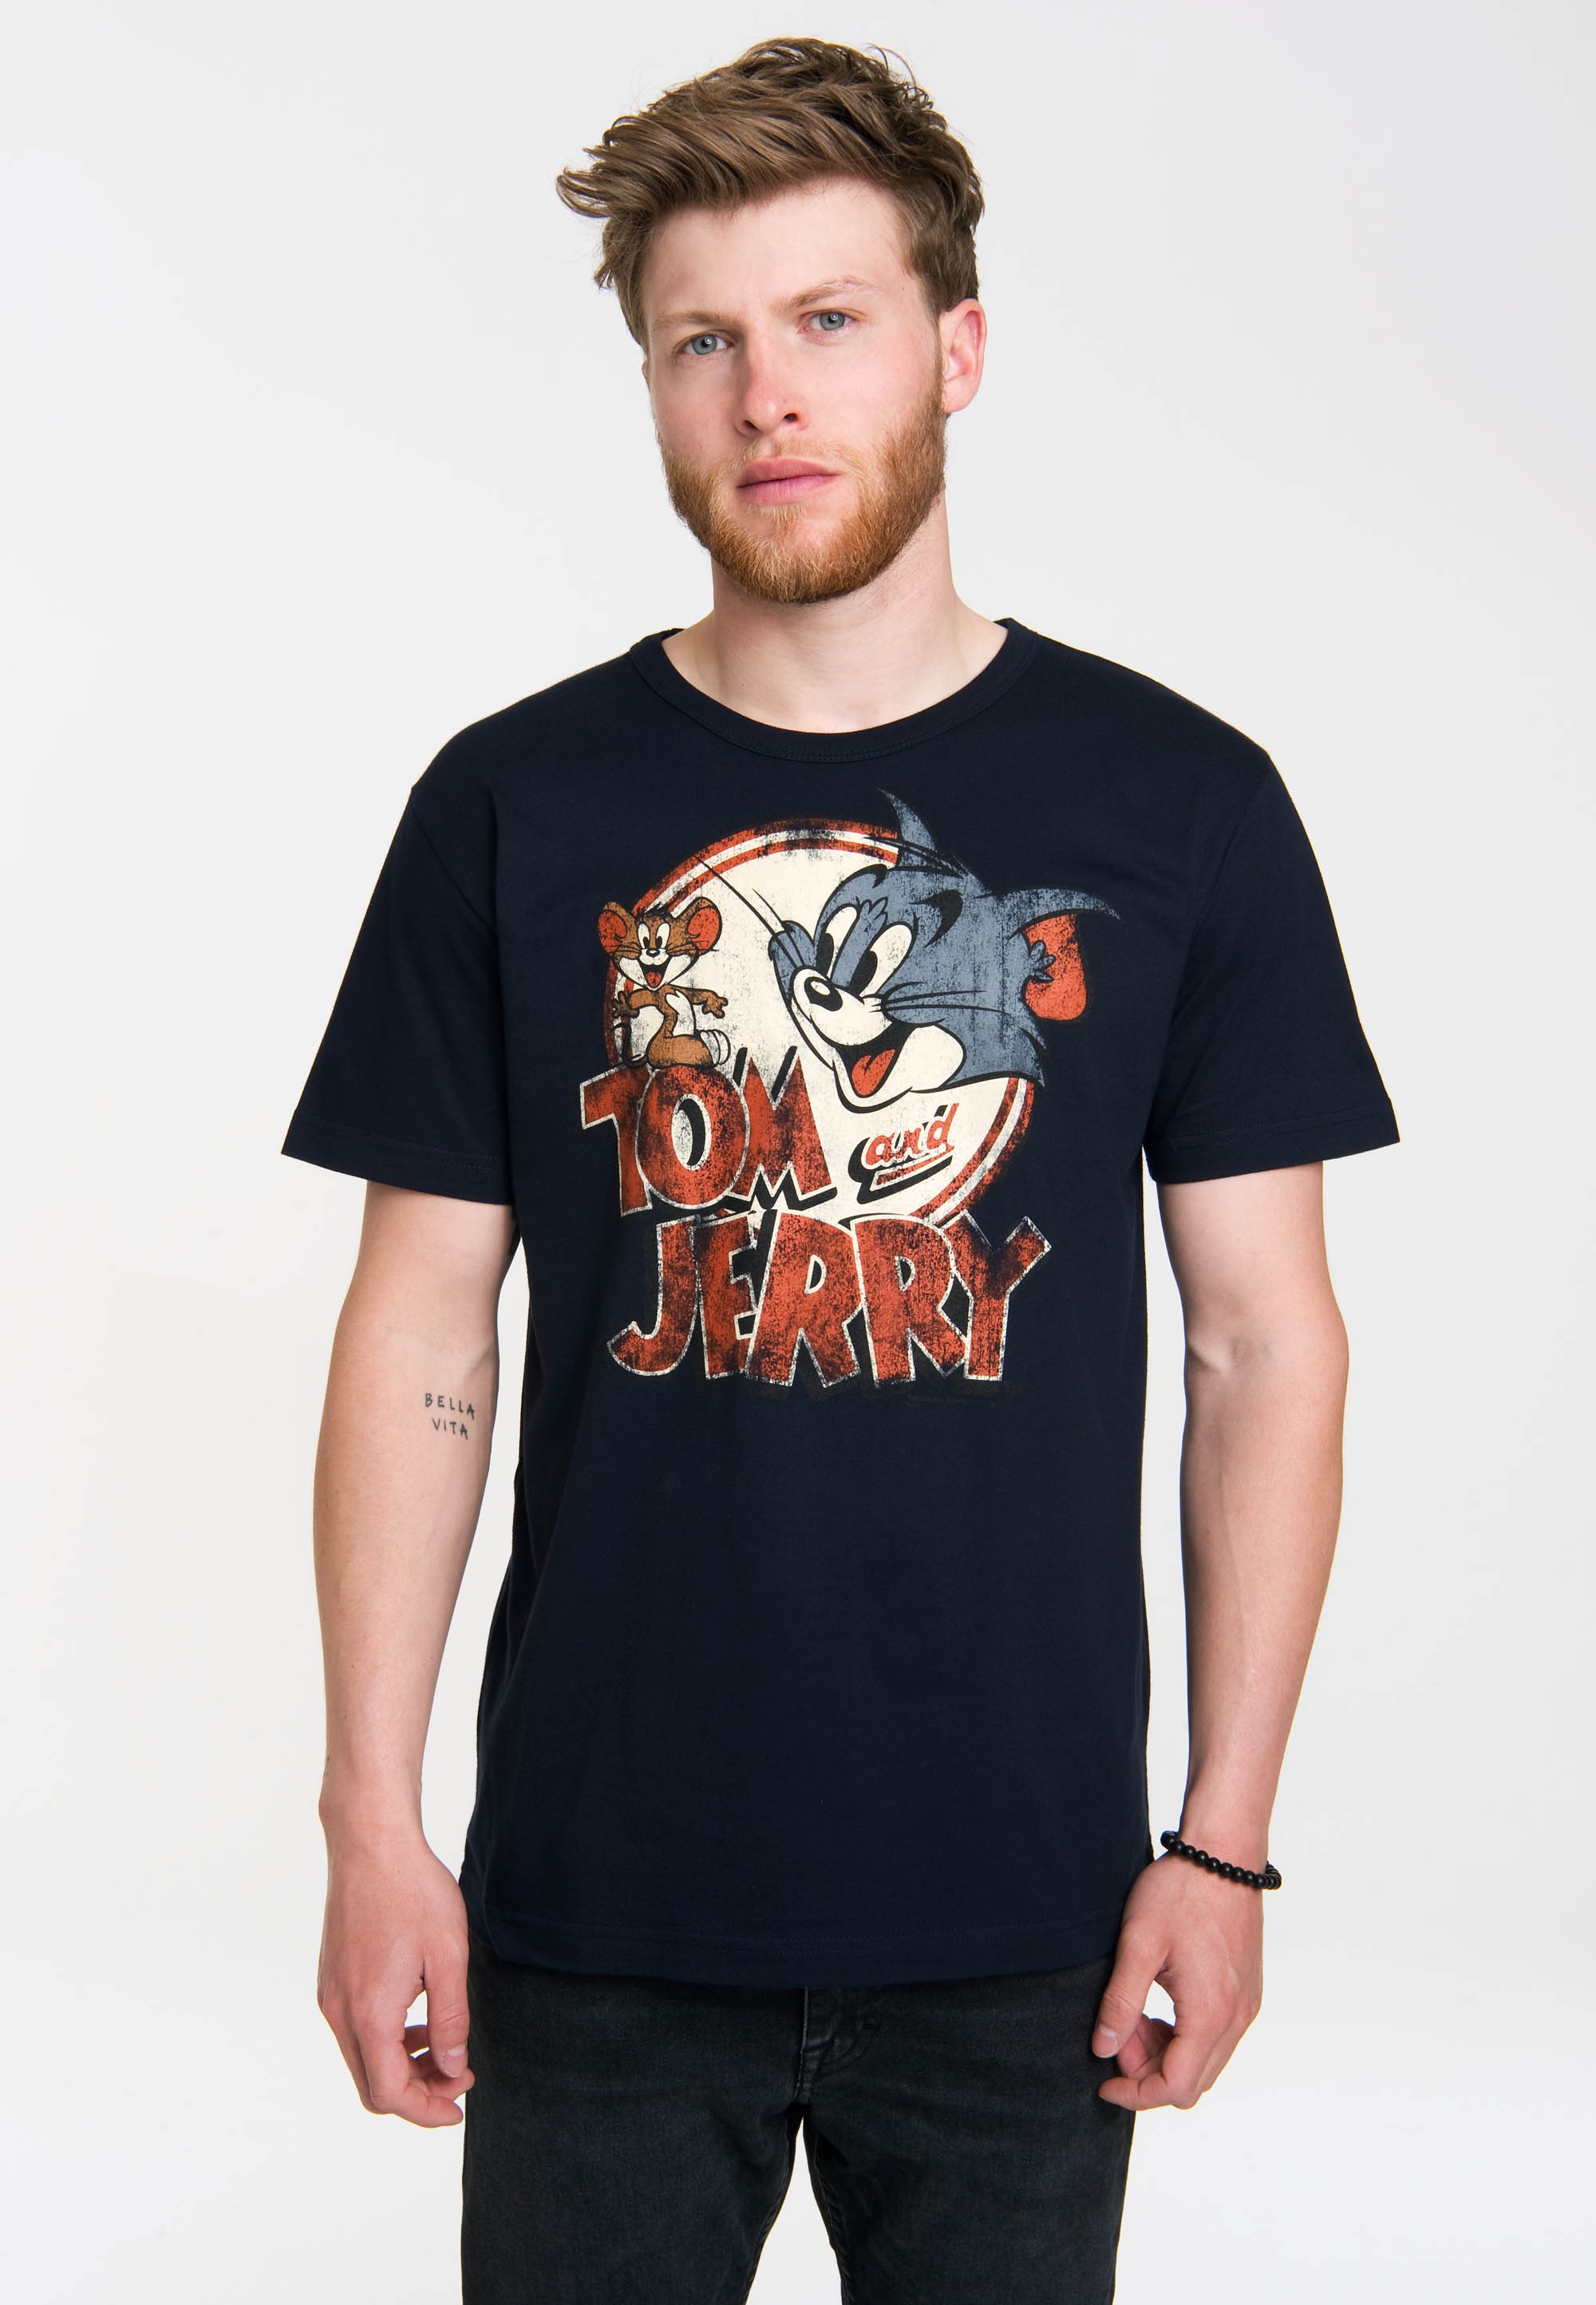 Logoshirt Herren T-Shirts Tom and Jerry - Logo, Rundhals - Blau - Blue (Navy) - Größe L (Herstellergröße: Large)